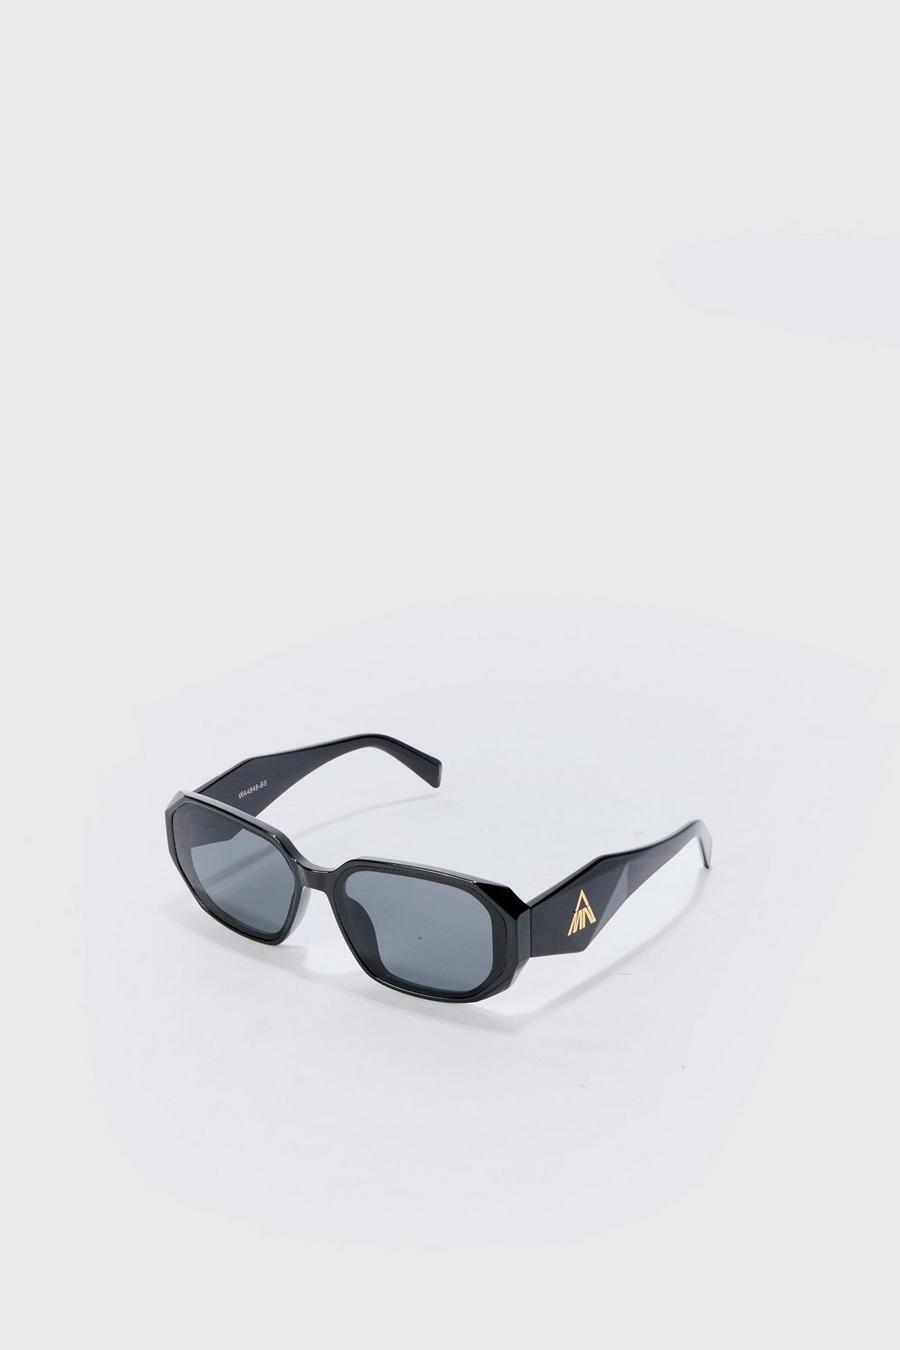 BM Rectangular Plastic Sunglasses In Black